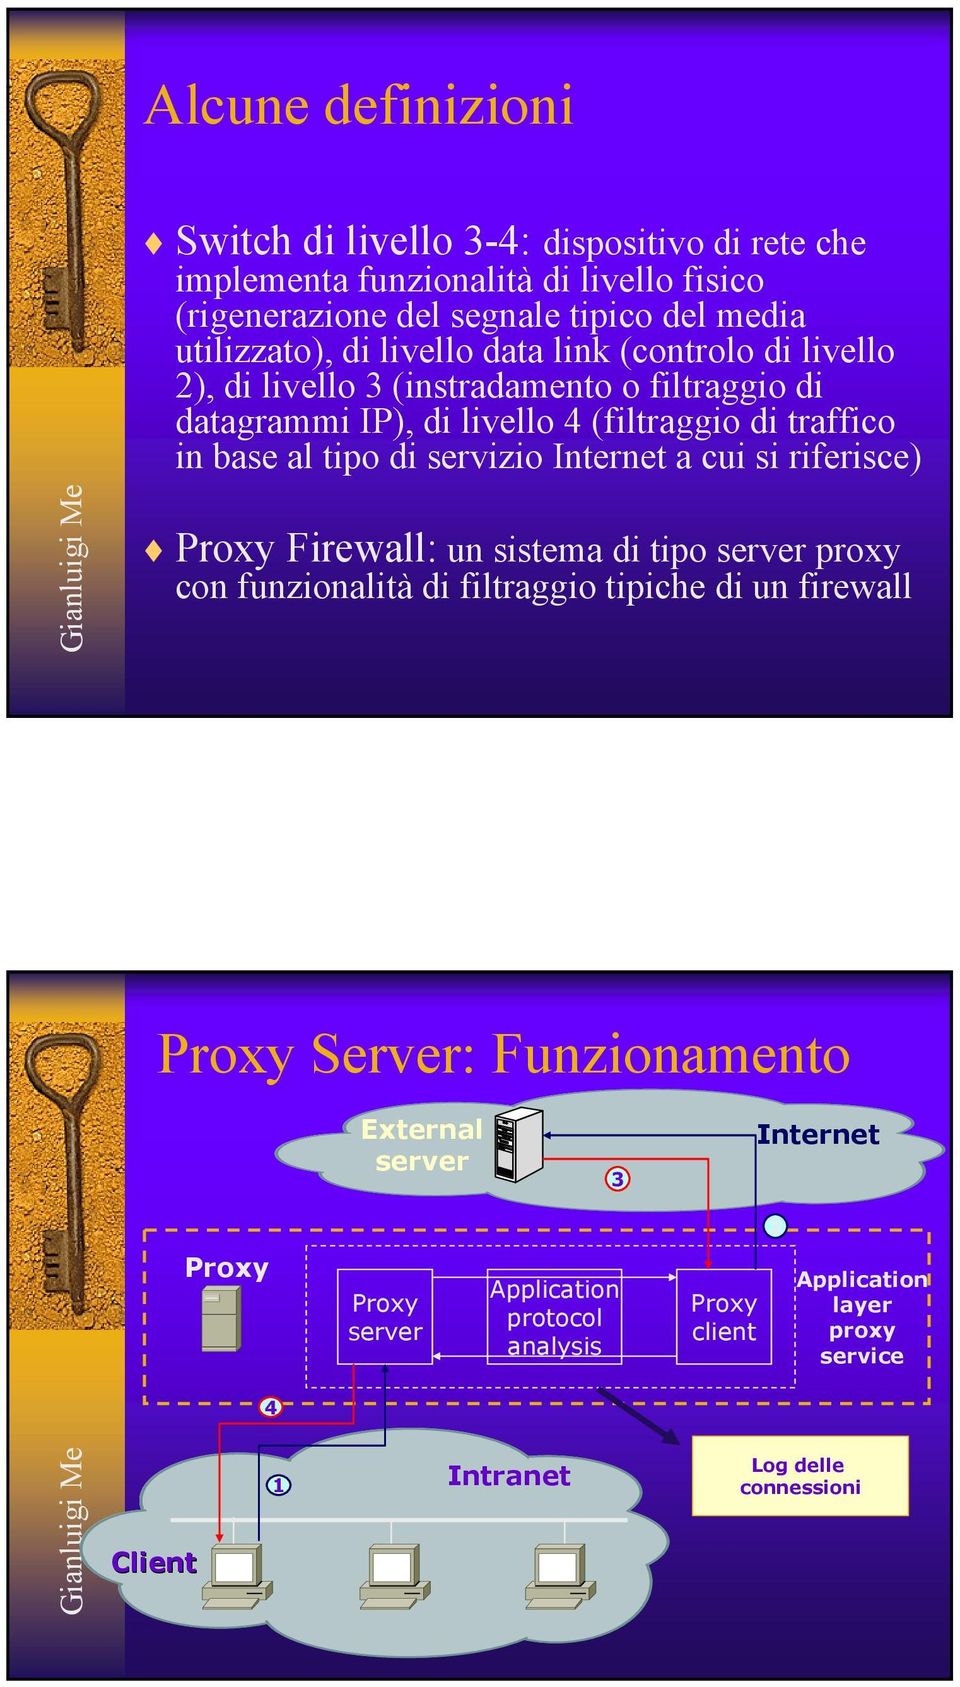 servizio Internet a cui si riferisce) Proxy Firewall: un sistema di tipo server proxy con funzionalità di filtraggio tipiche di un firewall Proxy Server: